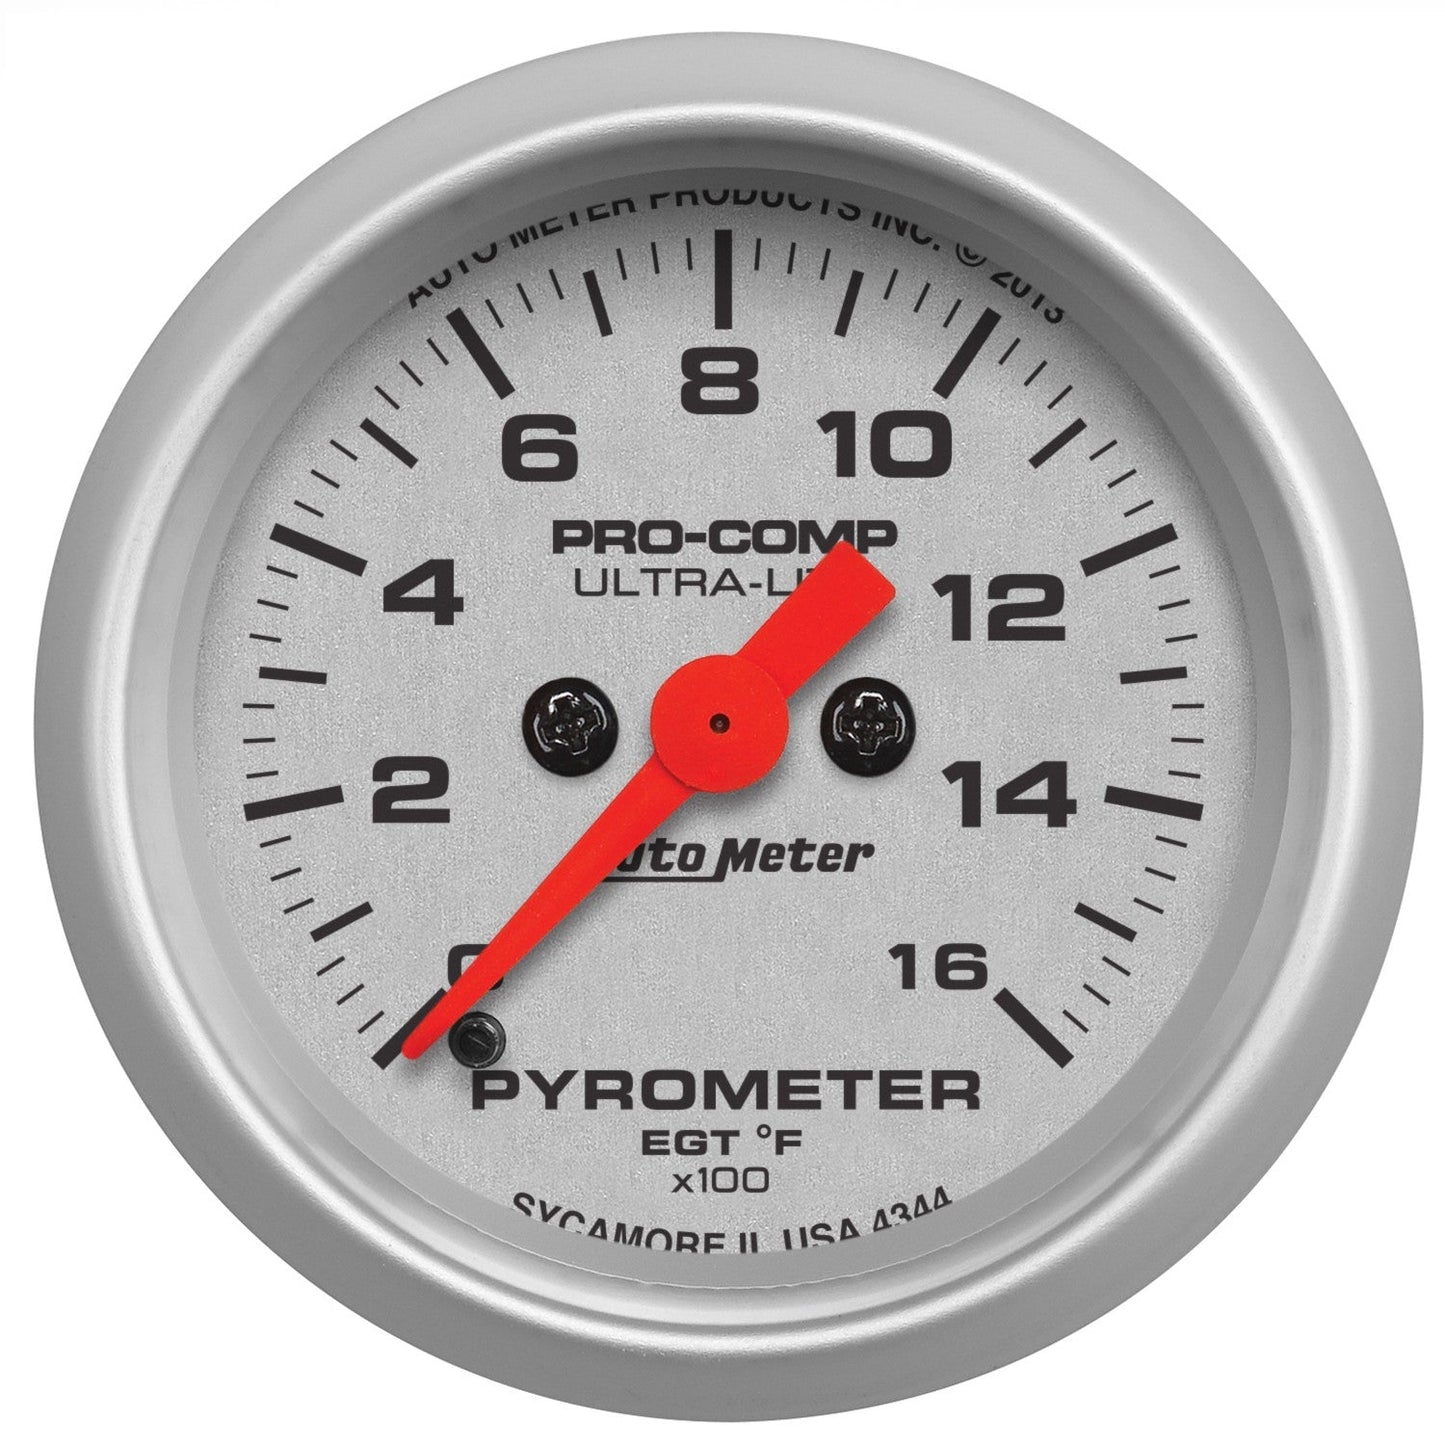 AutoMeter - PILLAR KIT, 100-250 °F/0-35 PSI/0-1600 °F, 99-07 FORD SUPERDUTY, ULTRA-LITE (7075)